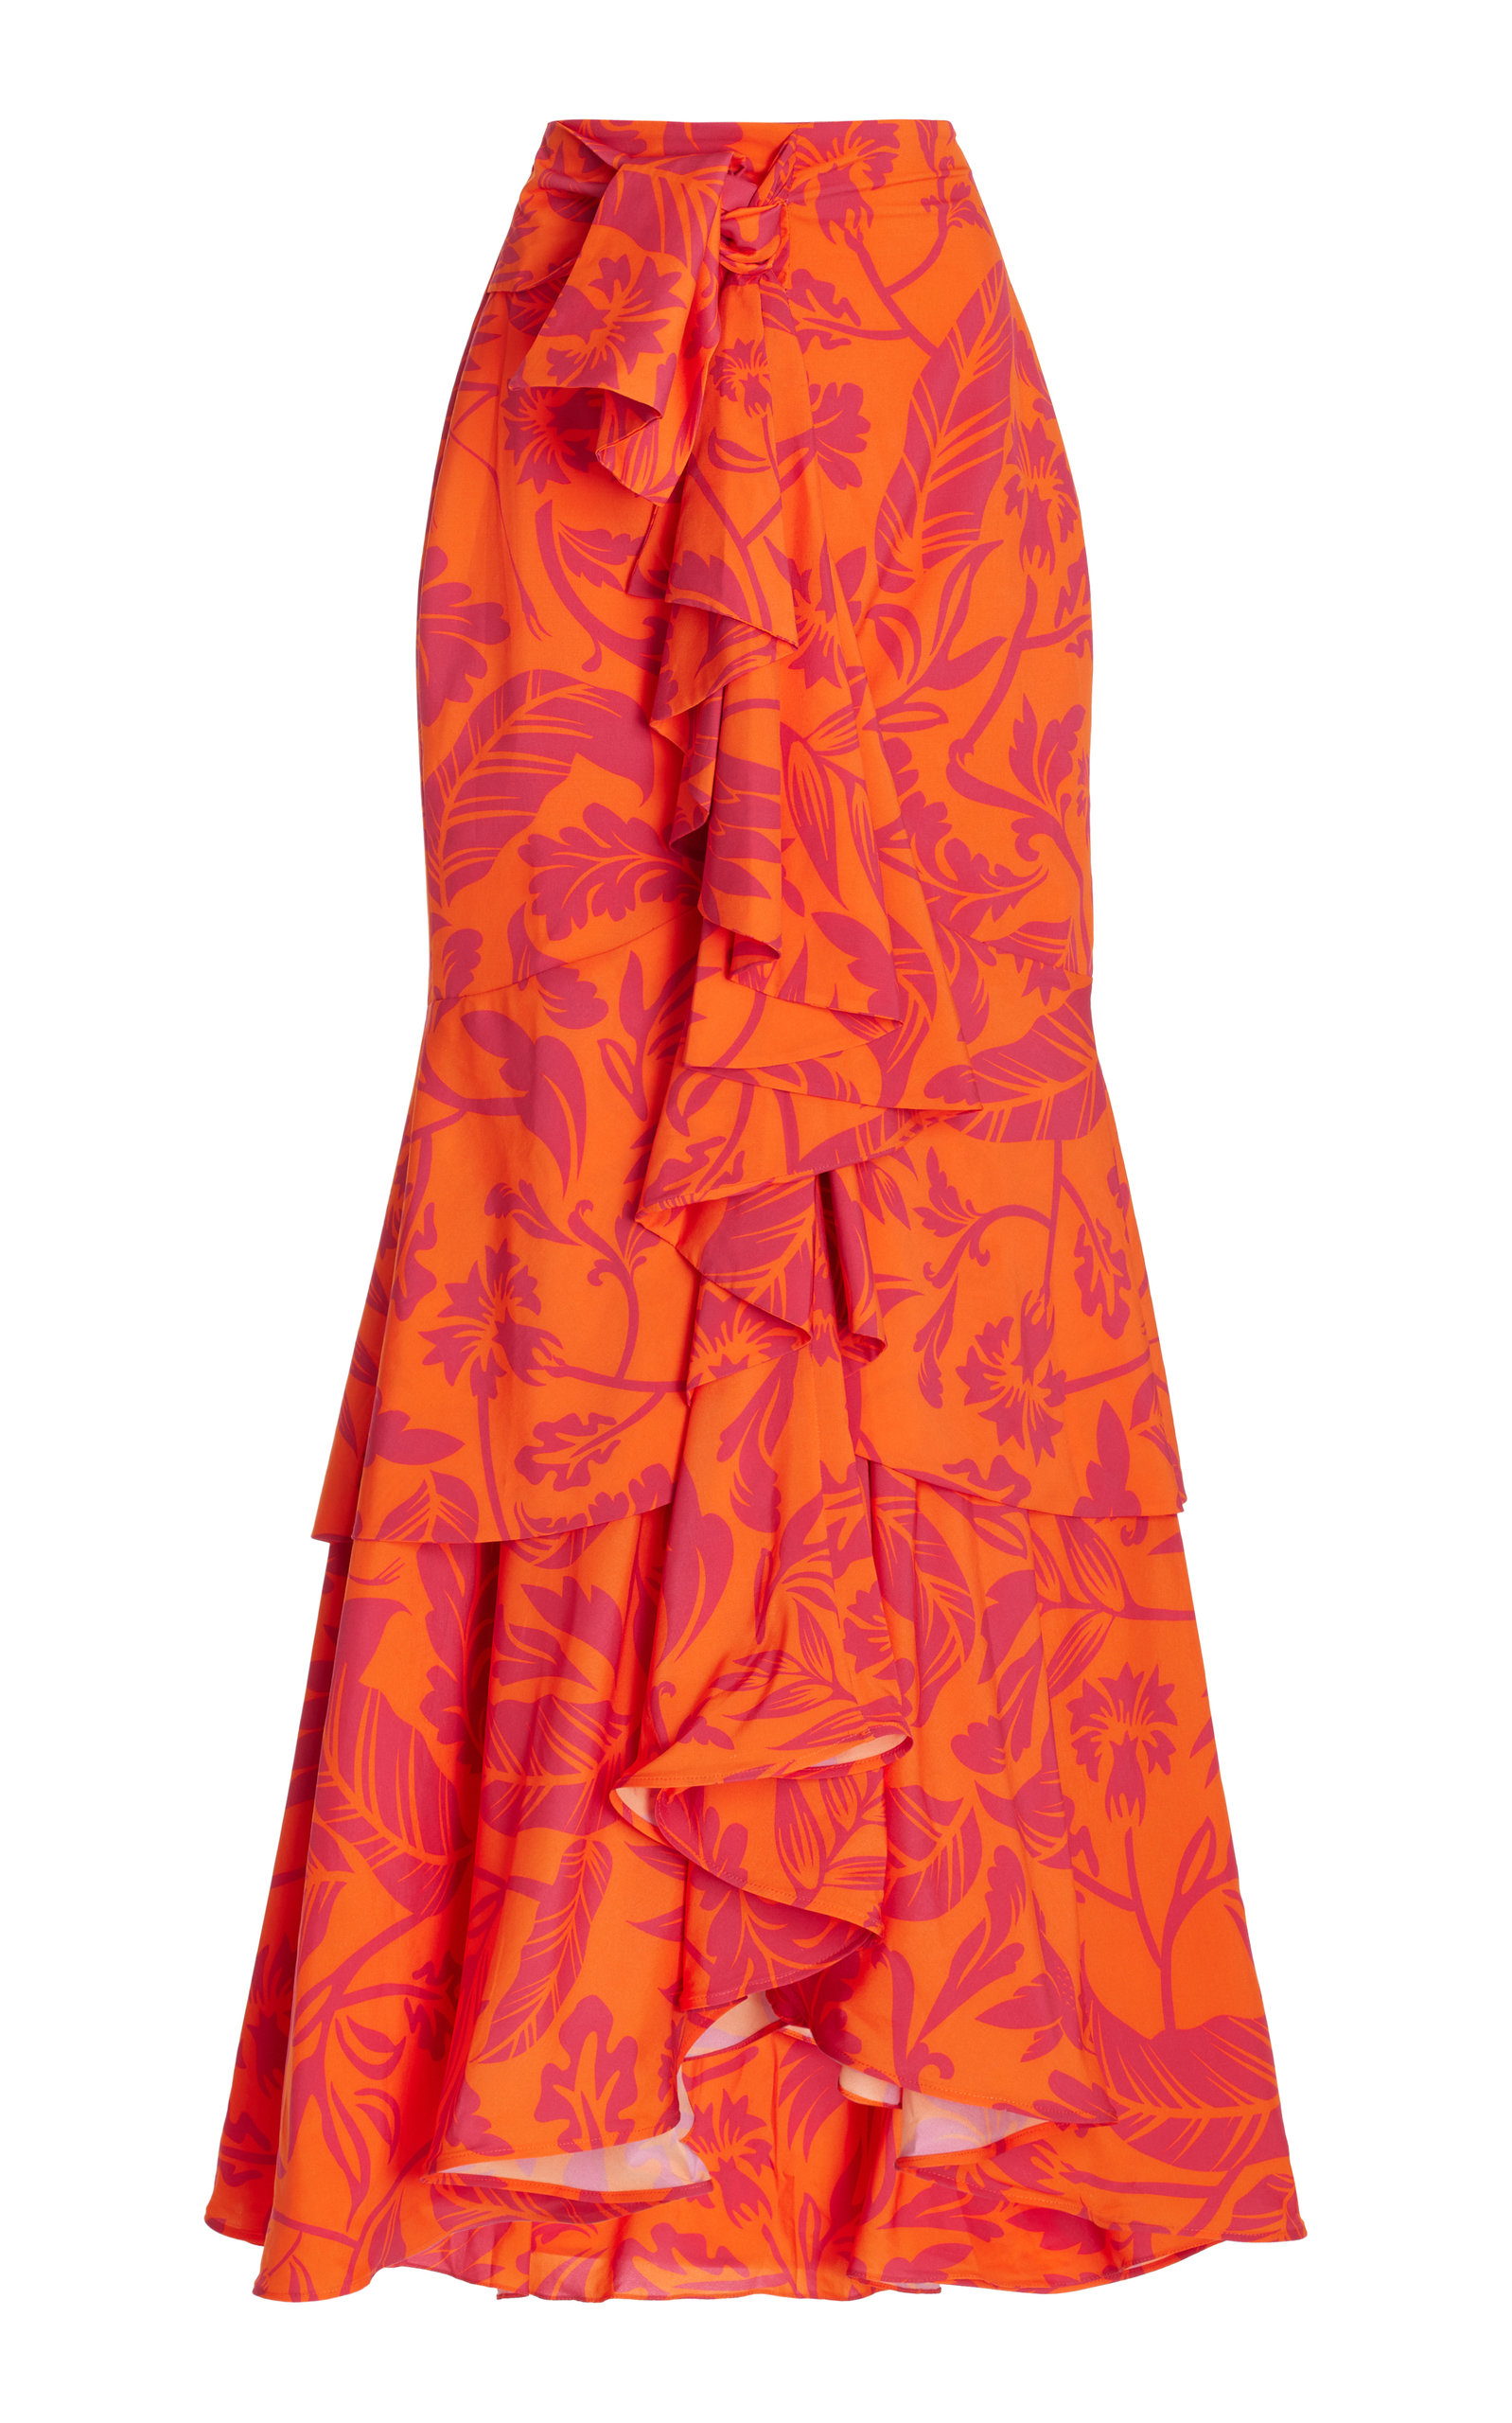 Andres Otalora Zayda Ruffled Crepe Maxi Skirt In Orange Birds Print